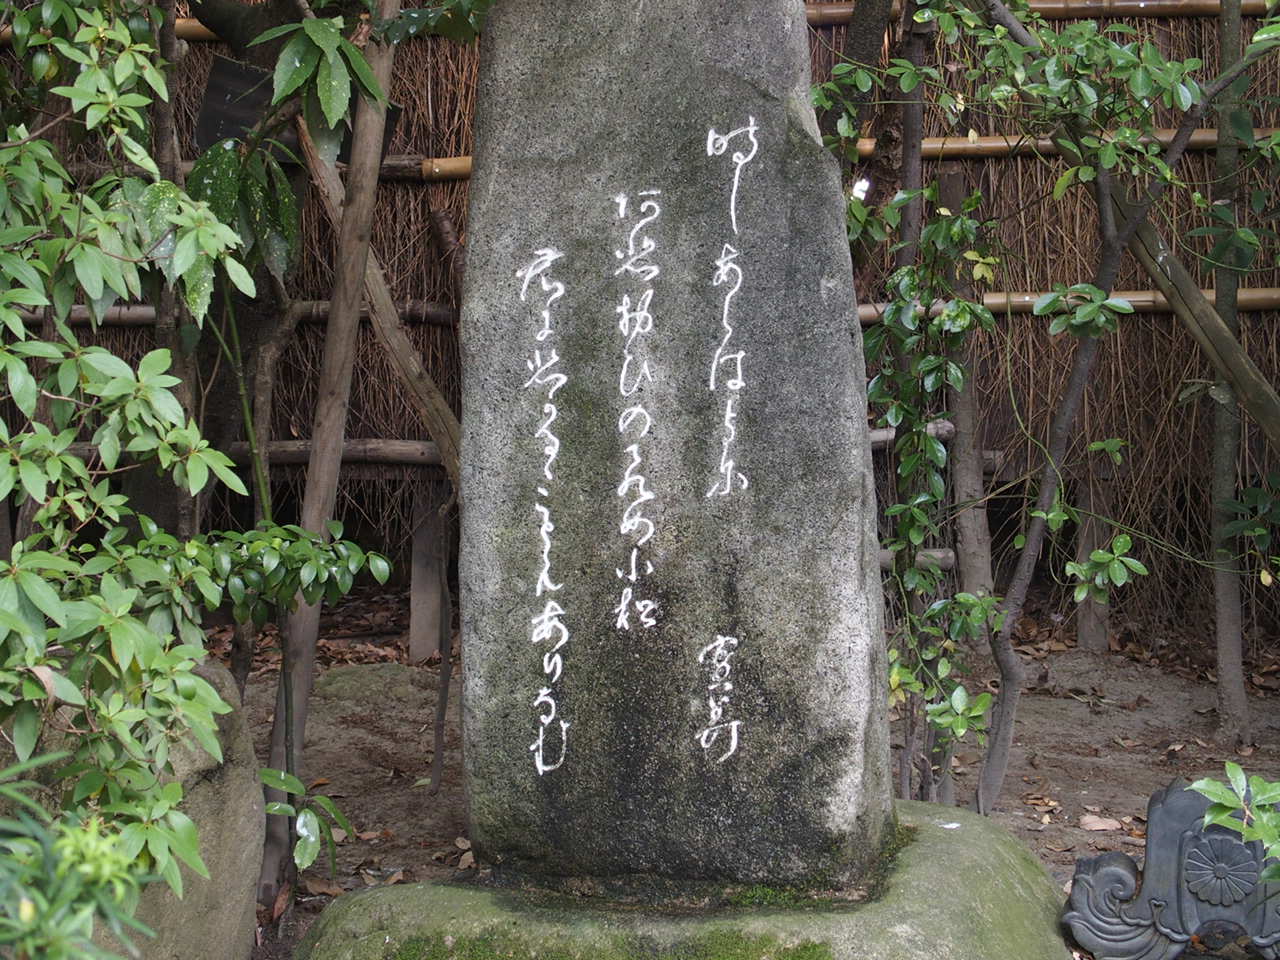 湯田温泉松田屋ホテルの庭園にある七卿落の三條実美ゆかりの碑